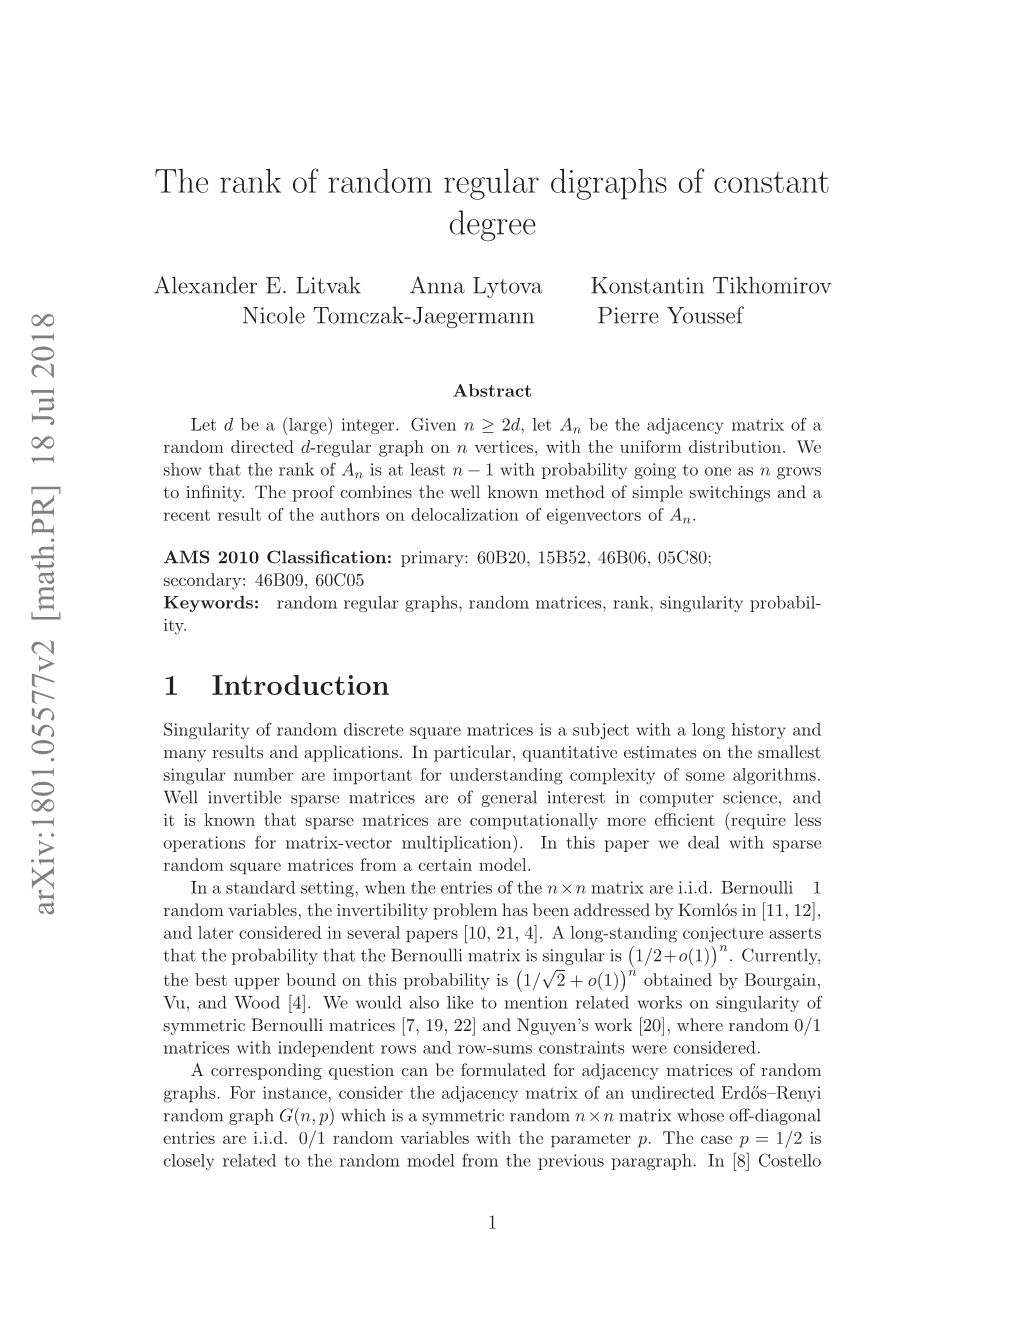 18 Jul 2018 the Rank of Random Regular Digraphs of Constant Degree